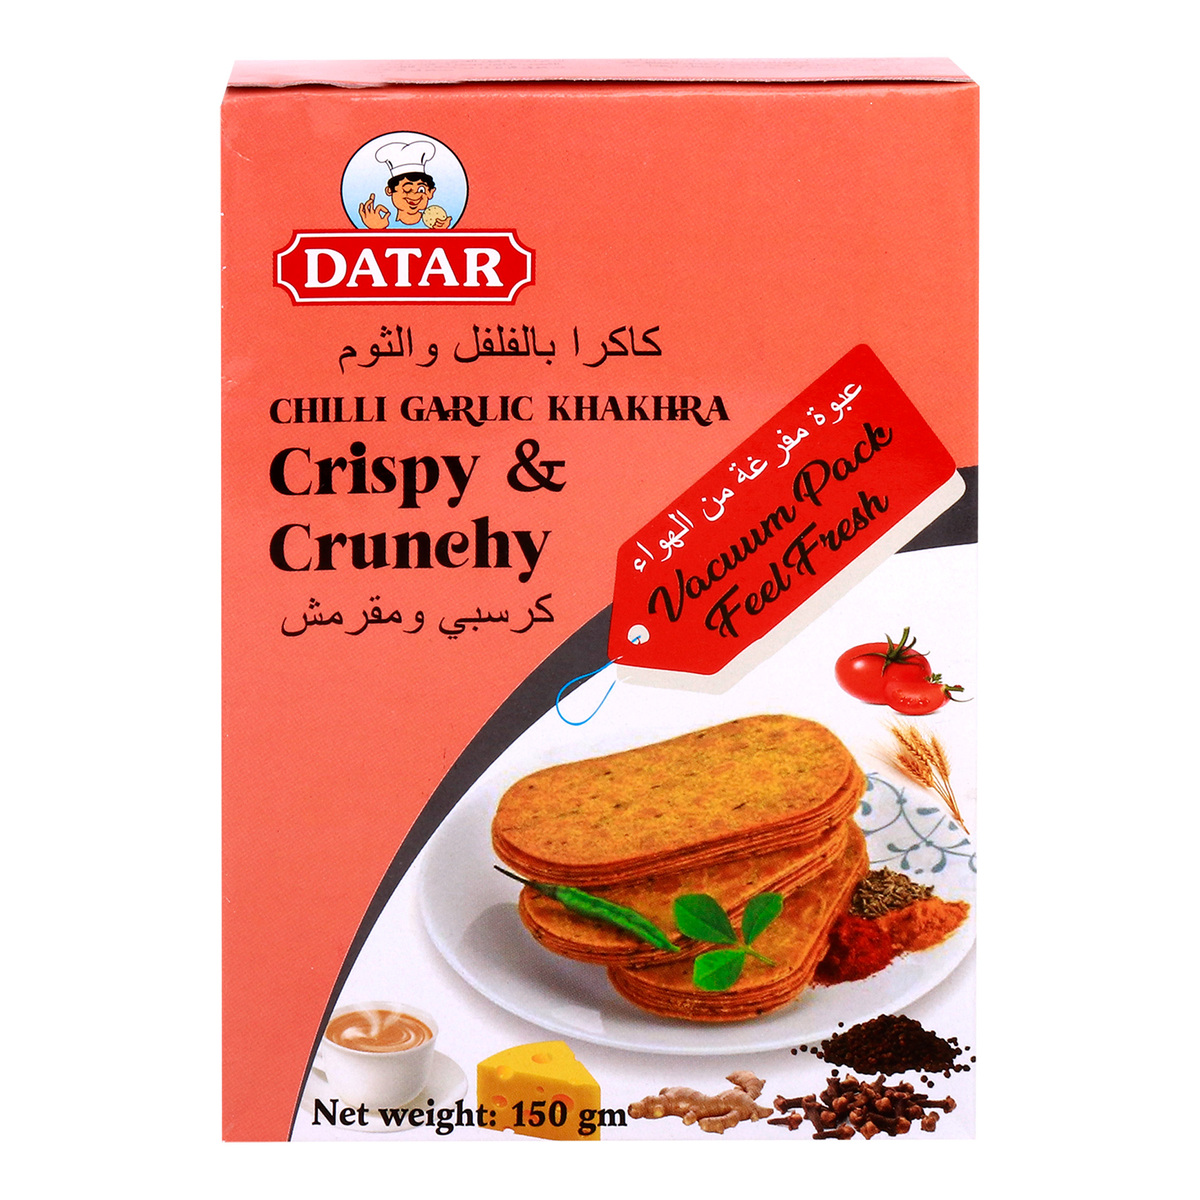 Datar Crispy & Crunchy Chilli Garlic Khakhra 150g